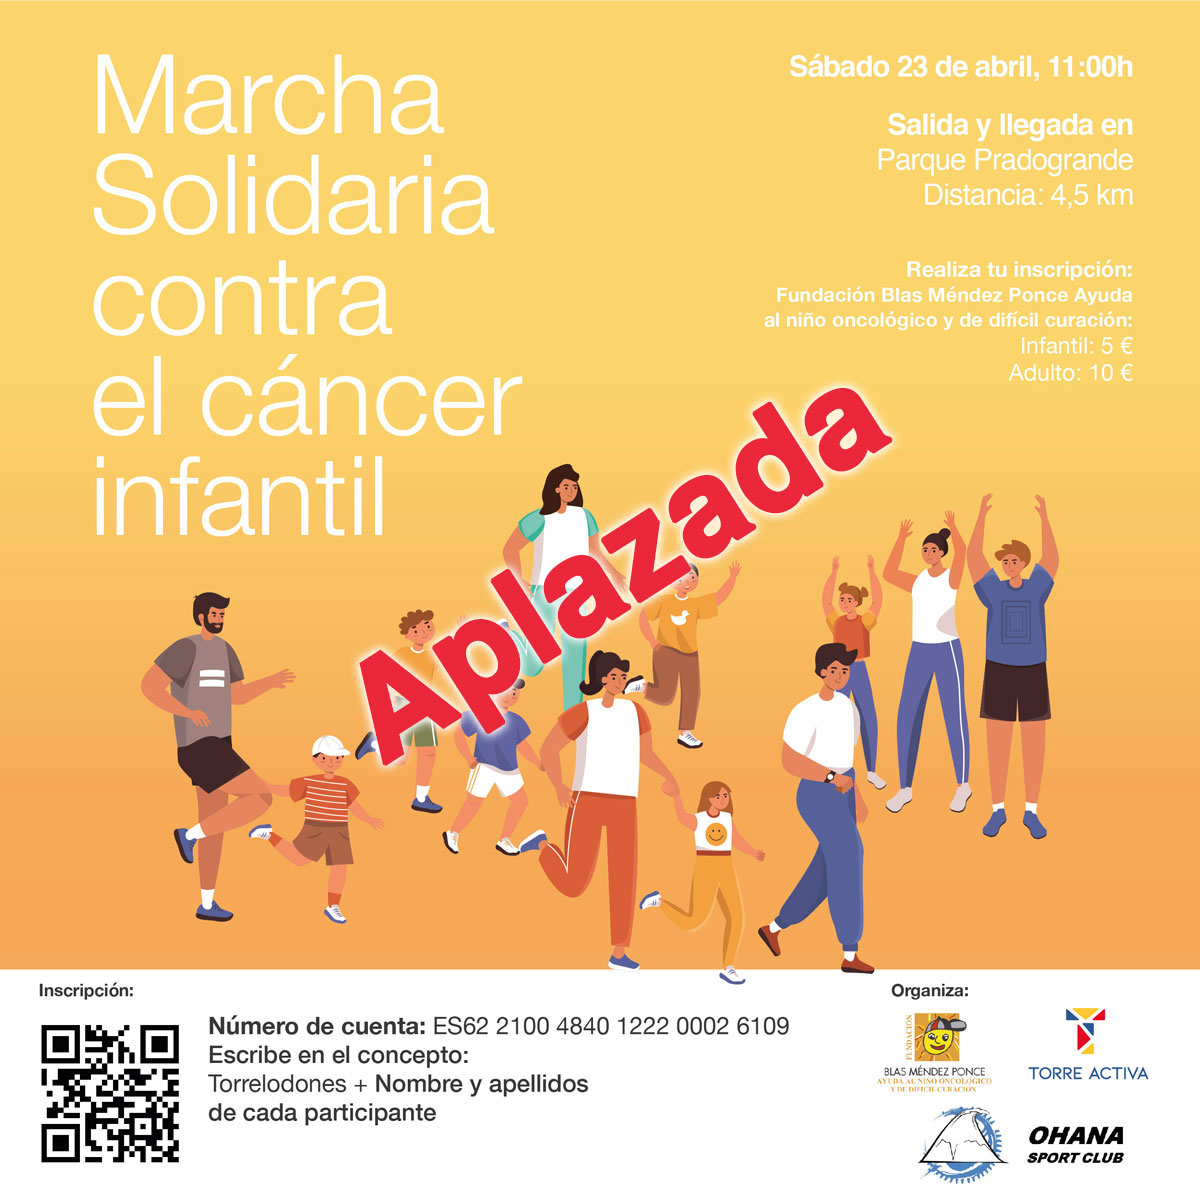 Marcha Solidaria contra el cáncer infantil